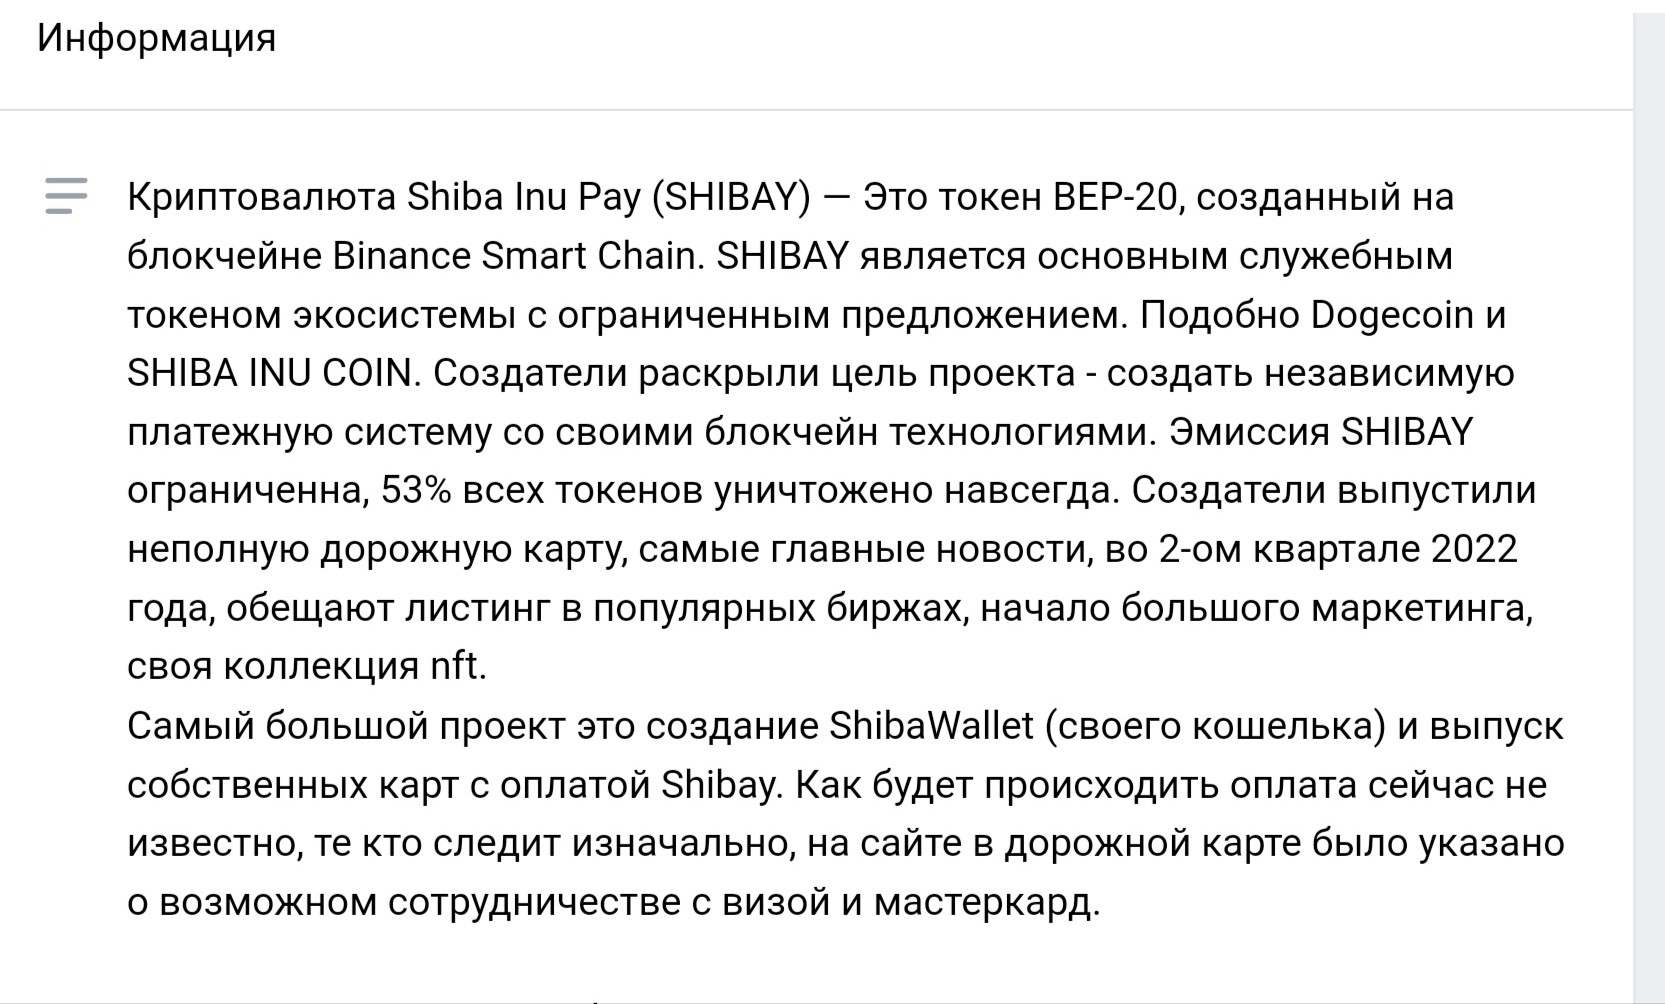 Информация о криптовалюте Shibay Pay